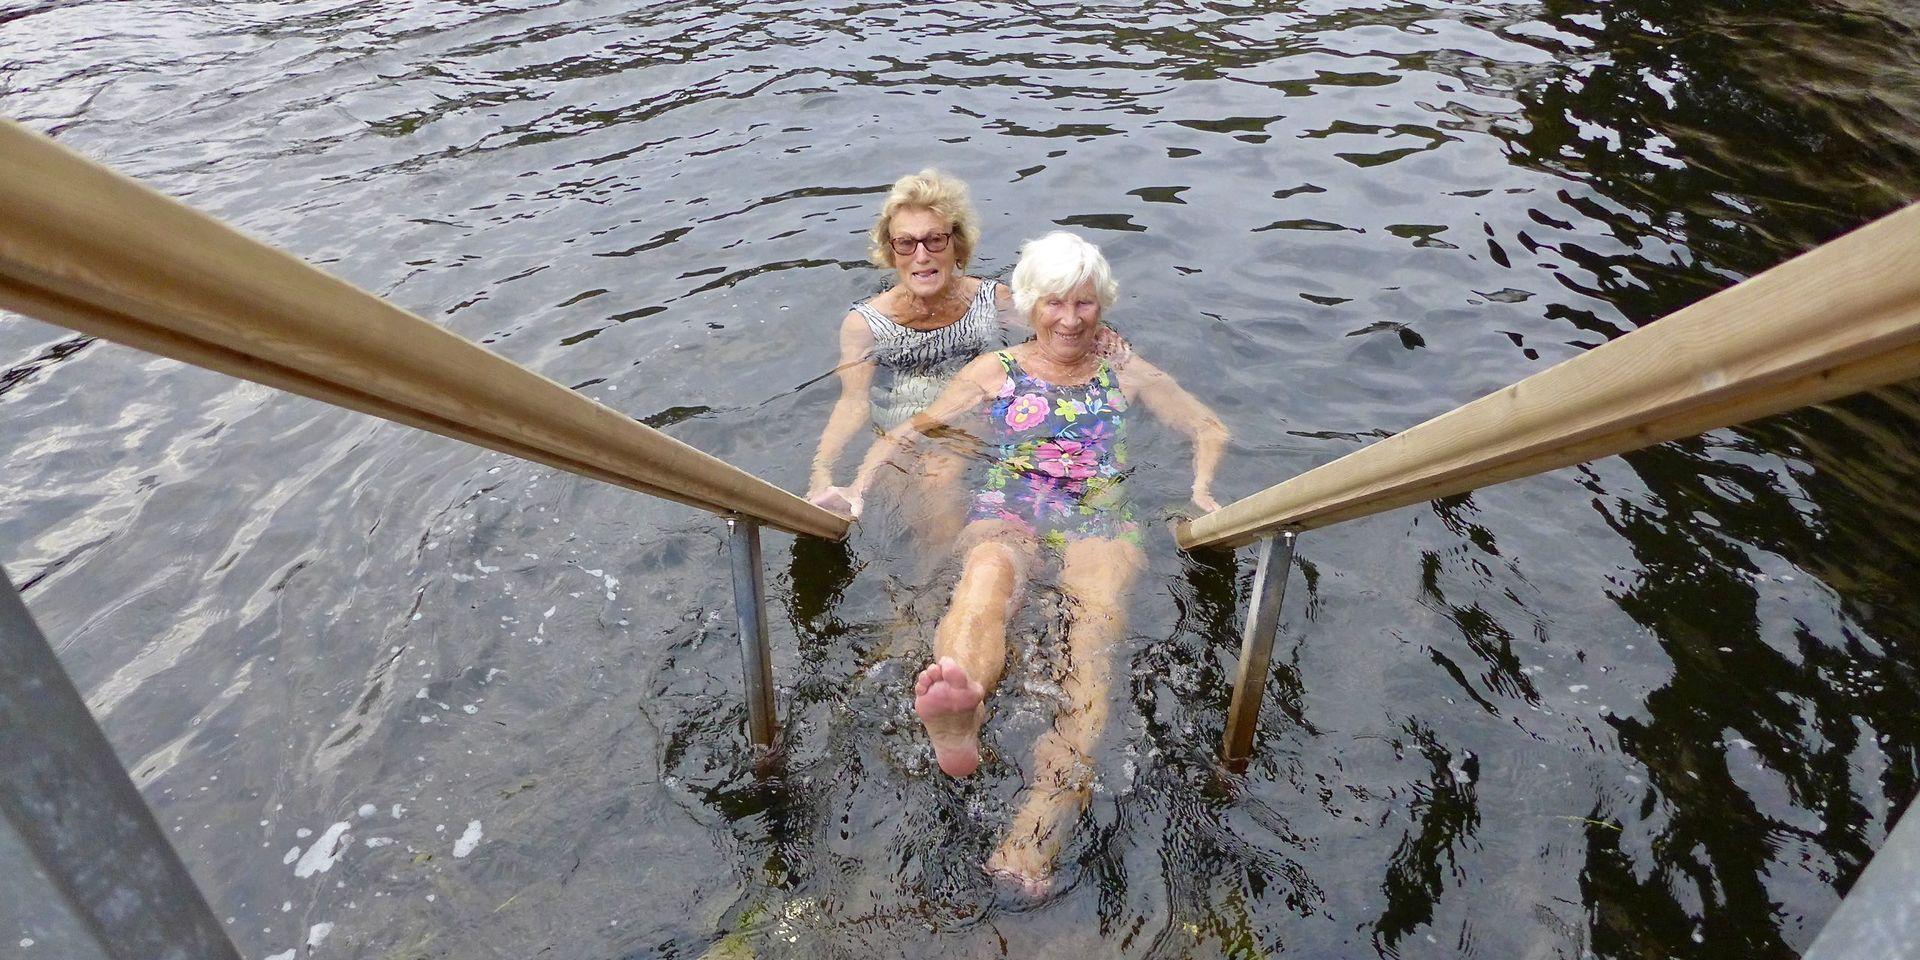 Kallbadhusets drottningar, 90-åringarna Eivor Carlevik (till vänster) och Stina Elisson, tvekar inte att ta sig ett dopp i havet, trots höstväder med få plusgrader.